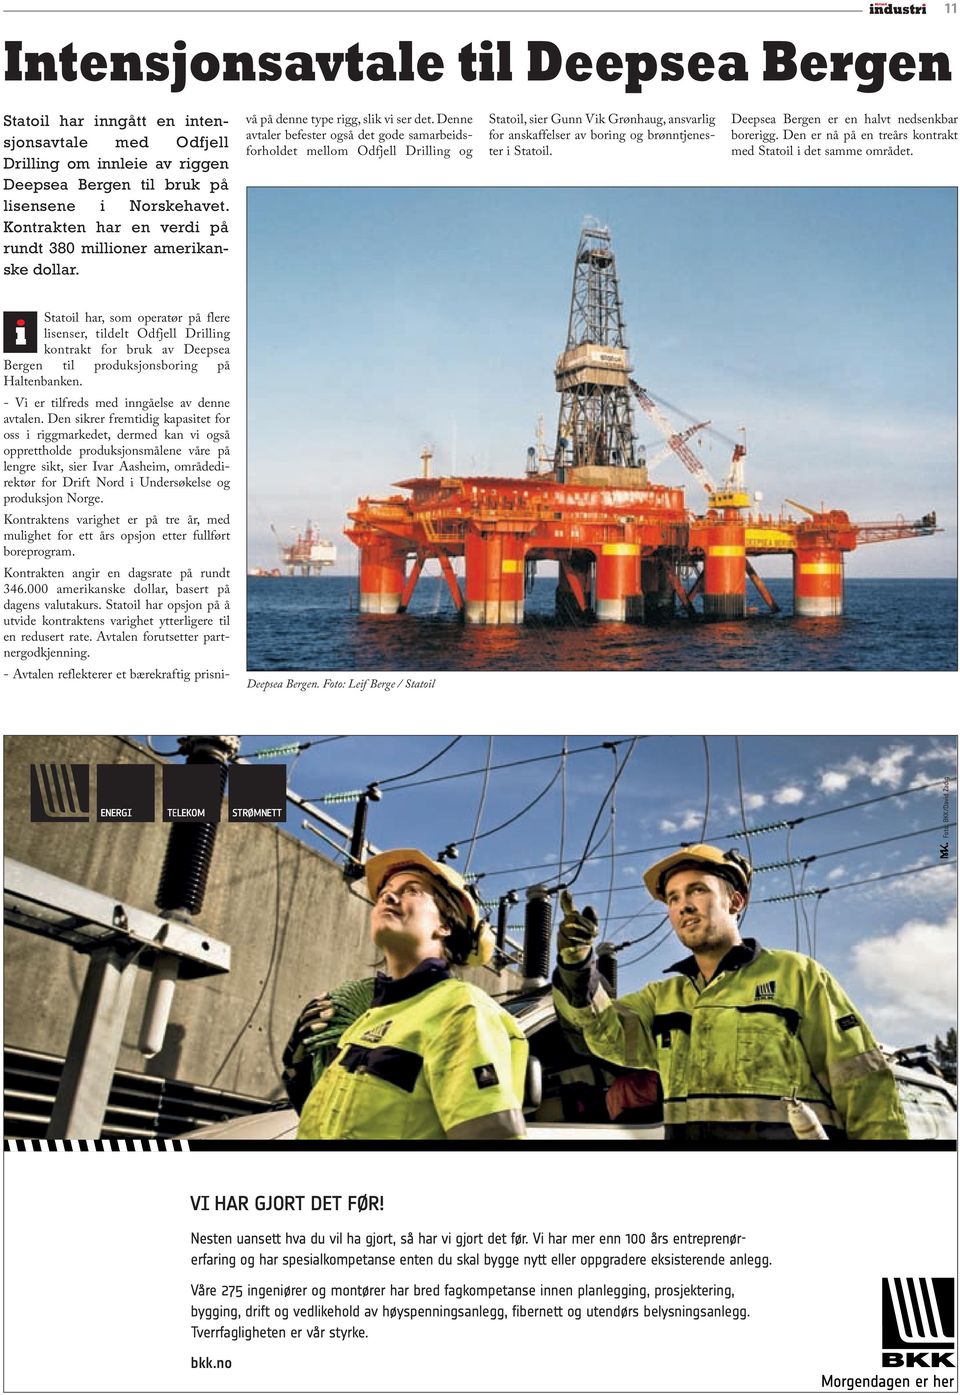 Denne avtaler befester også det gode samarbeidsforholdet mellom Odfjell Drilling og Statoil, sier Gunn Vik Grønhaug, ansvarlig for anskaffelser av boring og brønntjenester i Statoil.